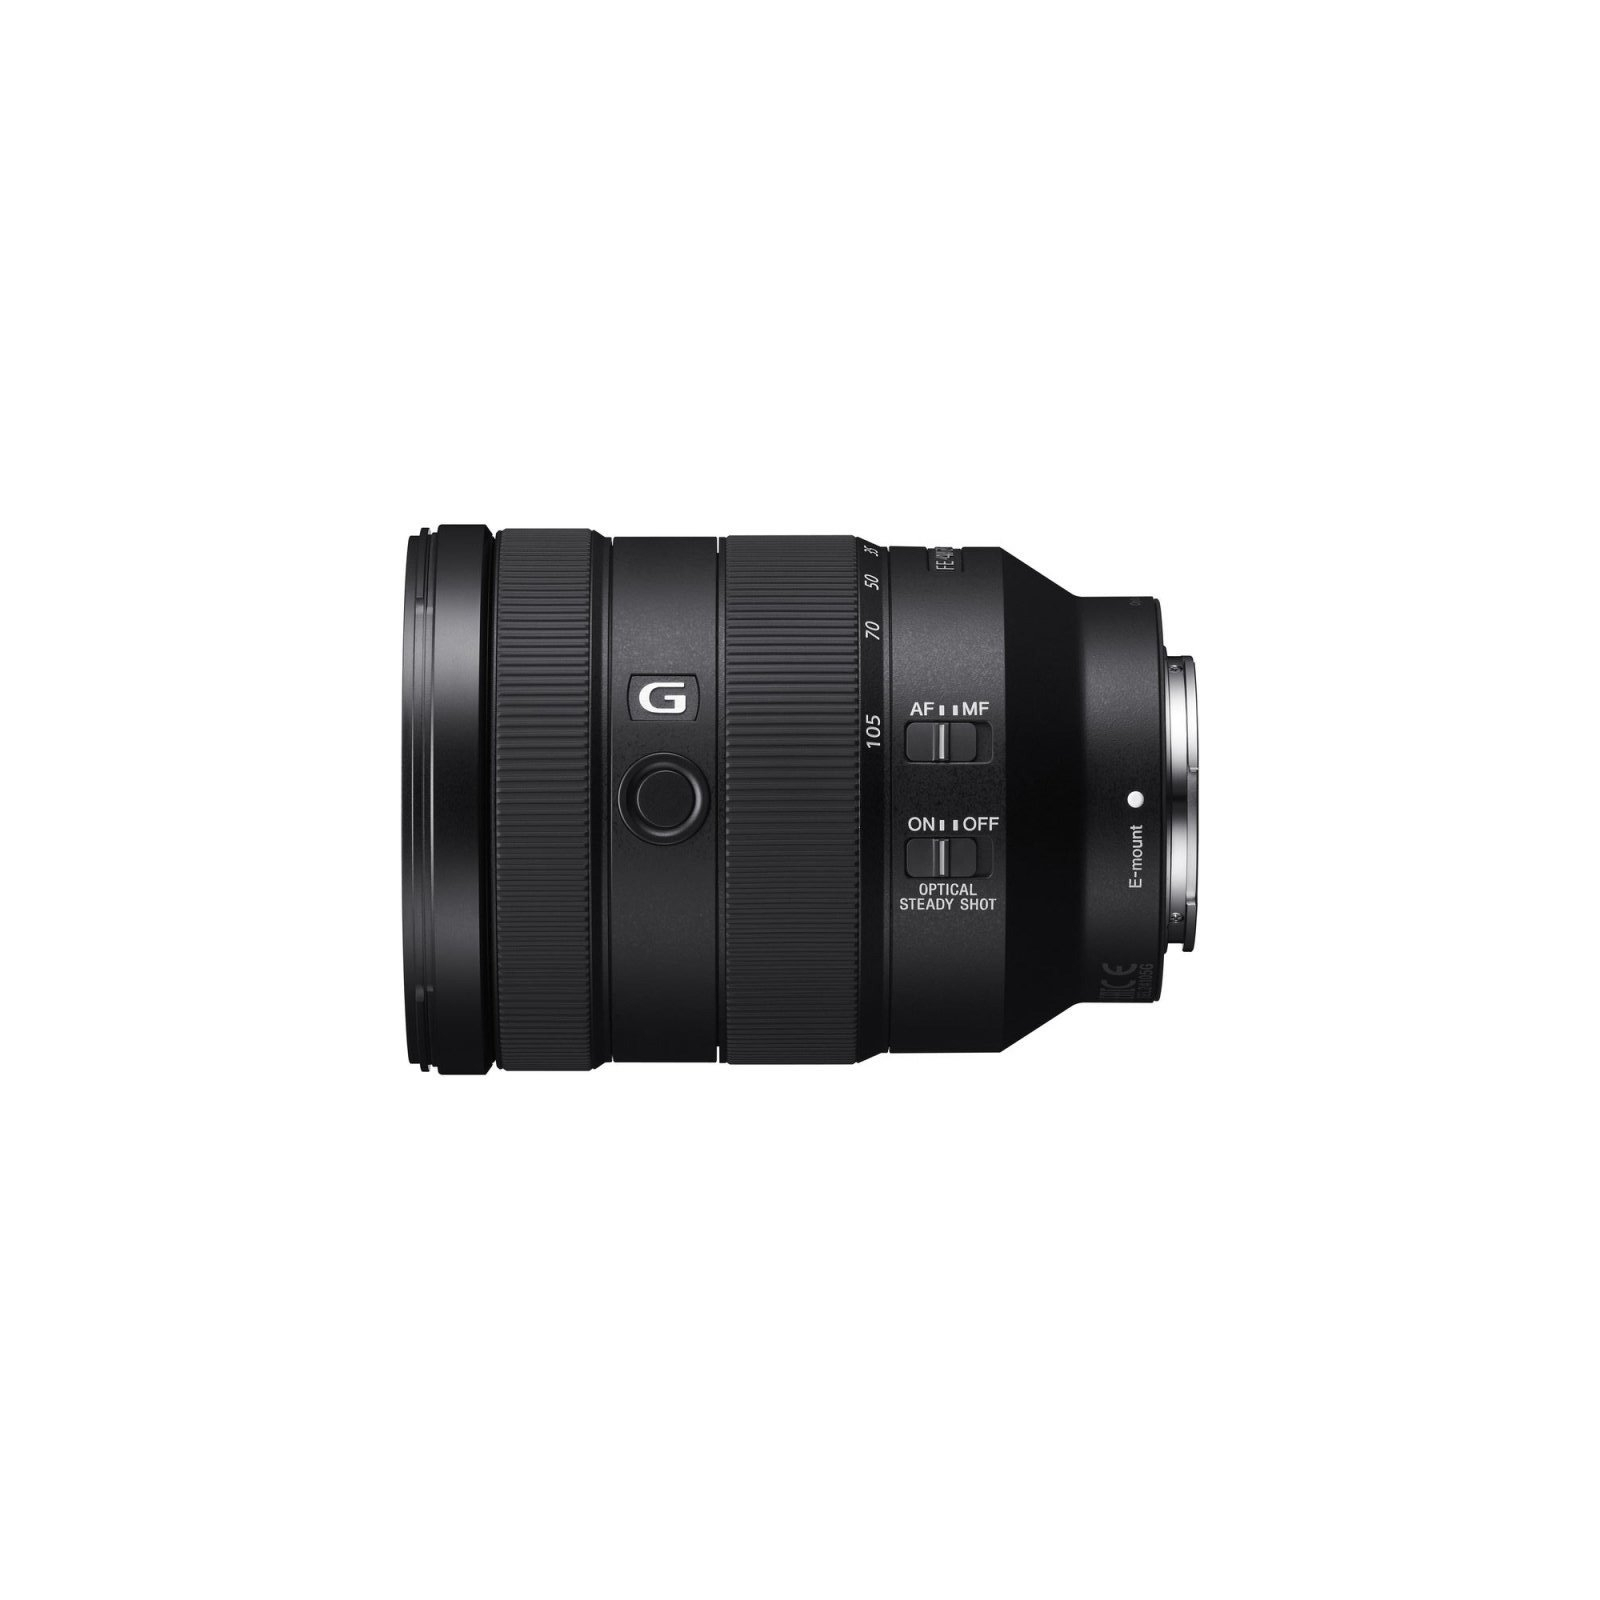 Об'єктив Sony 24-105mm f/4.0 G OSS для NEX FF (SEL24105G.SYX)